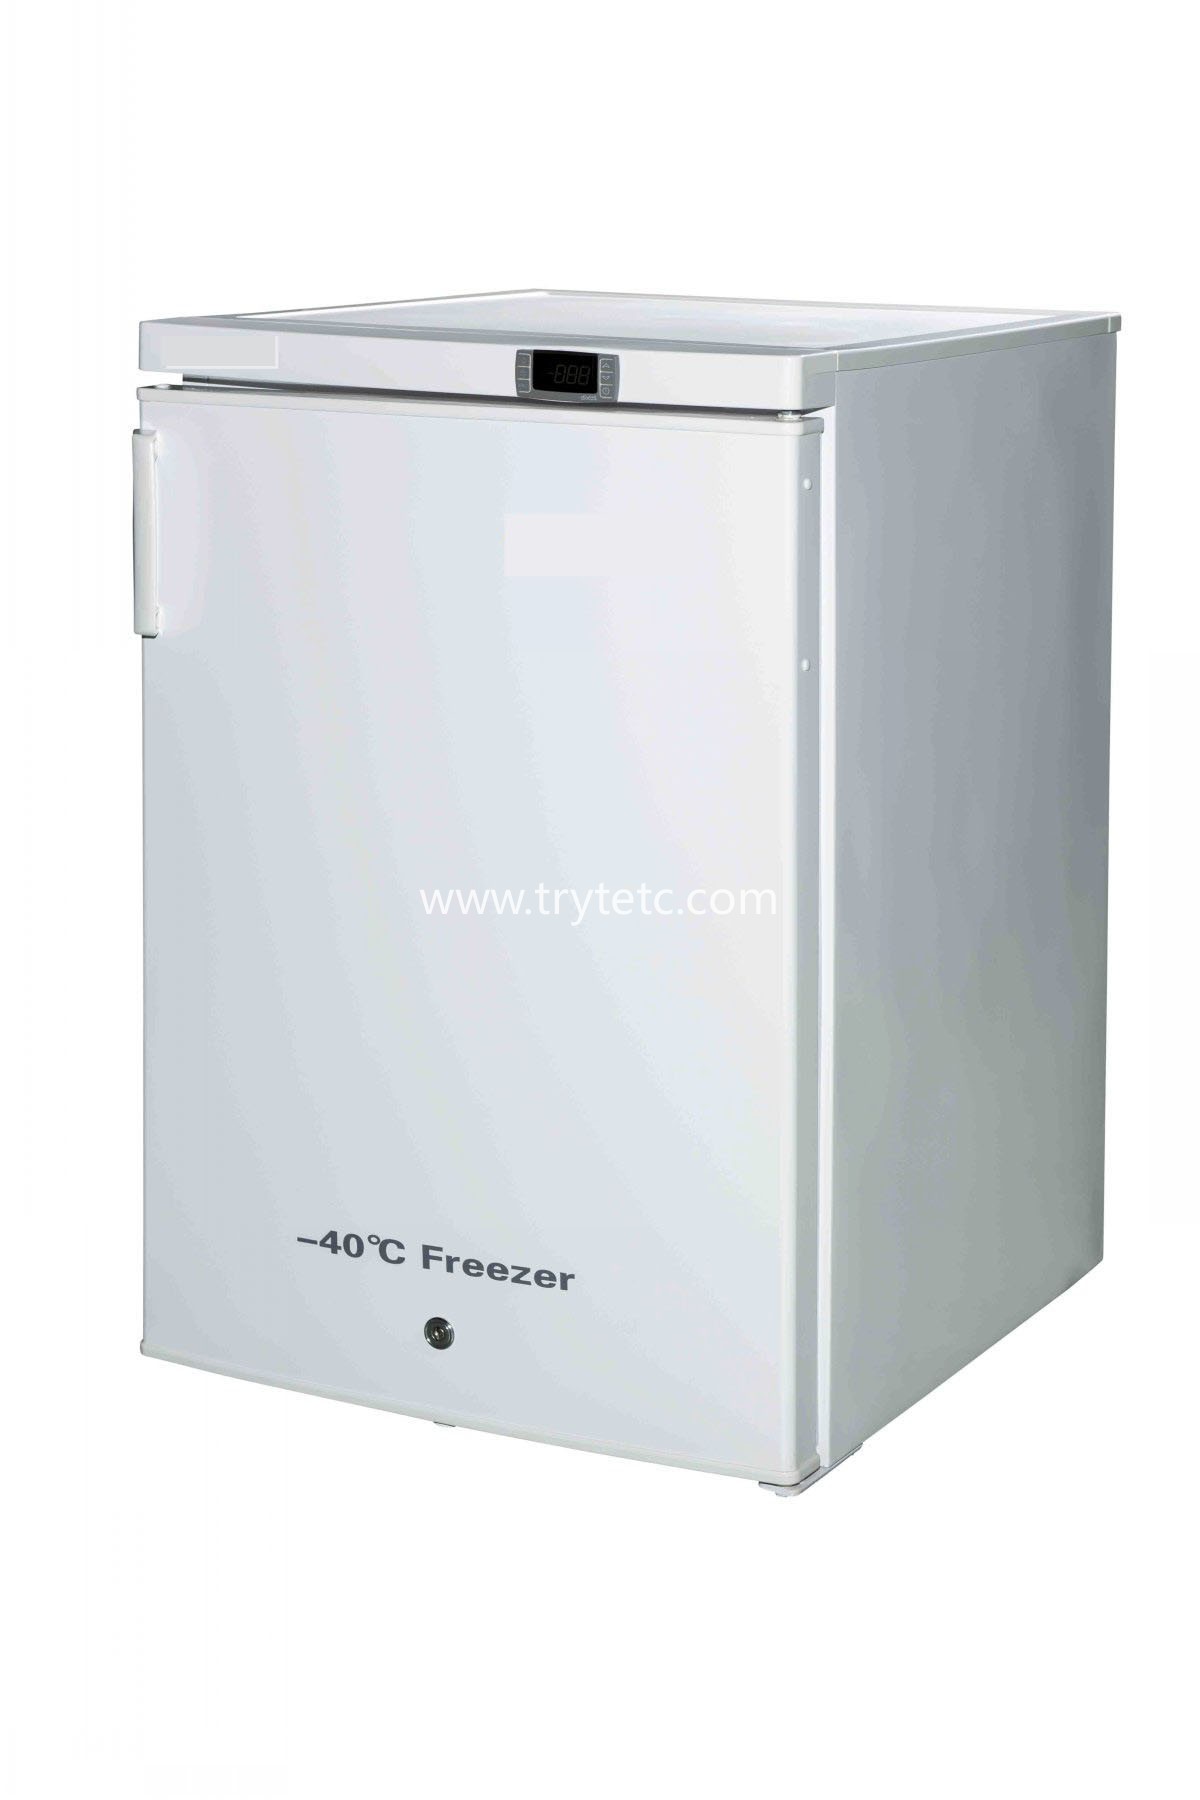 TR-FL90 Upright freezer